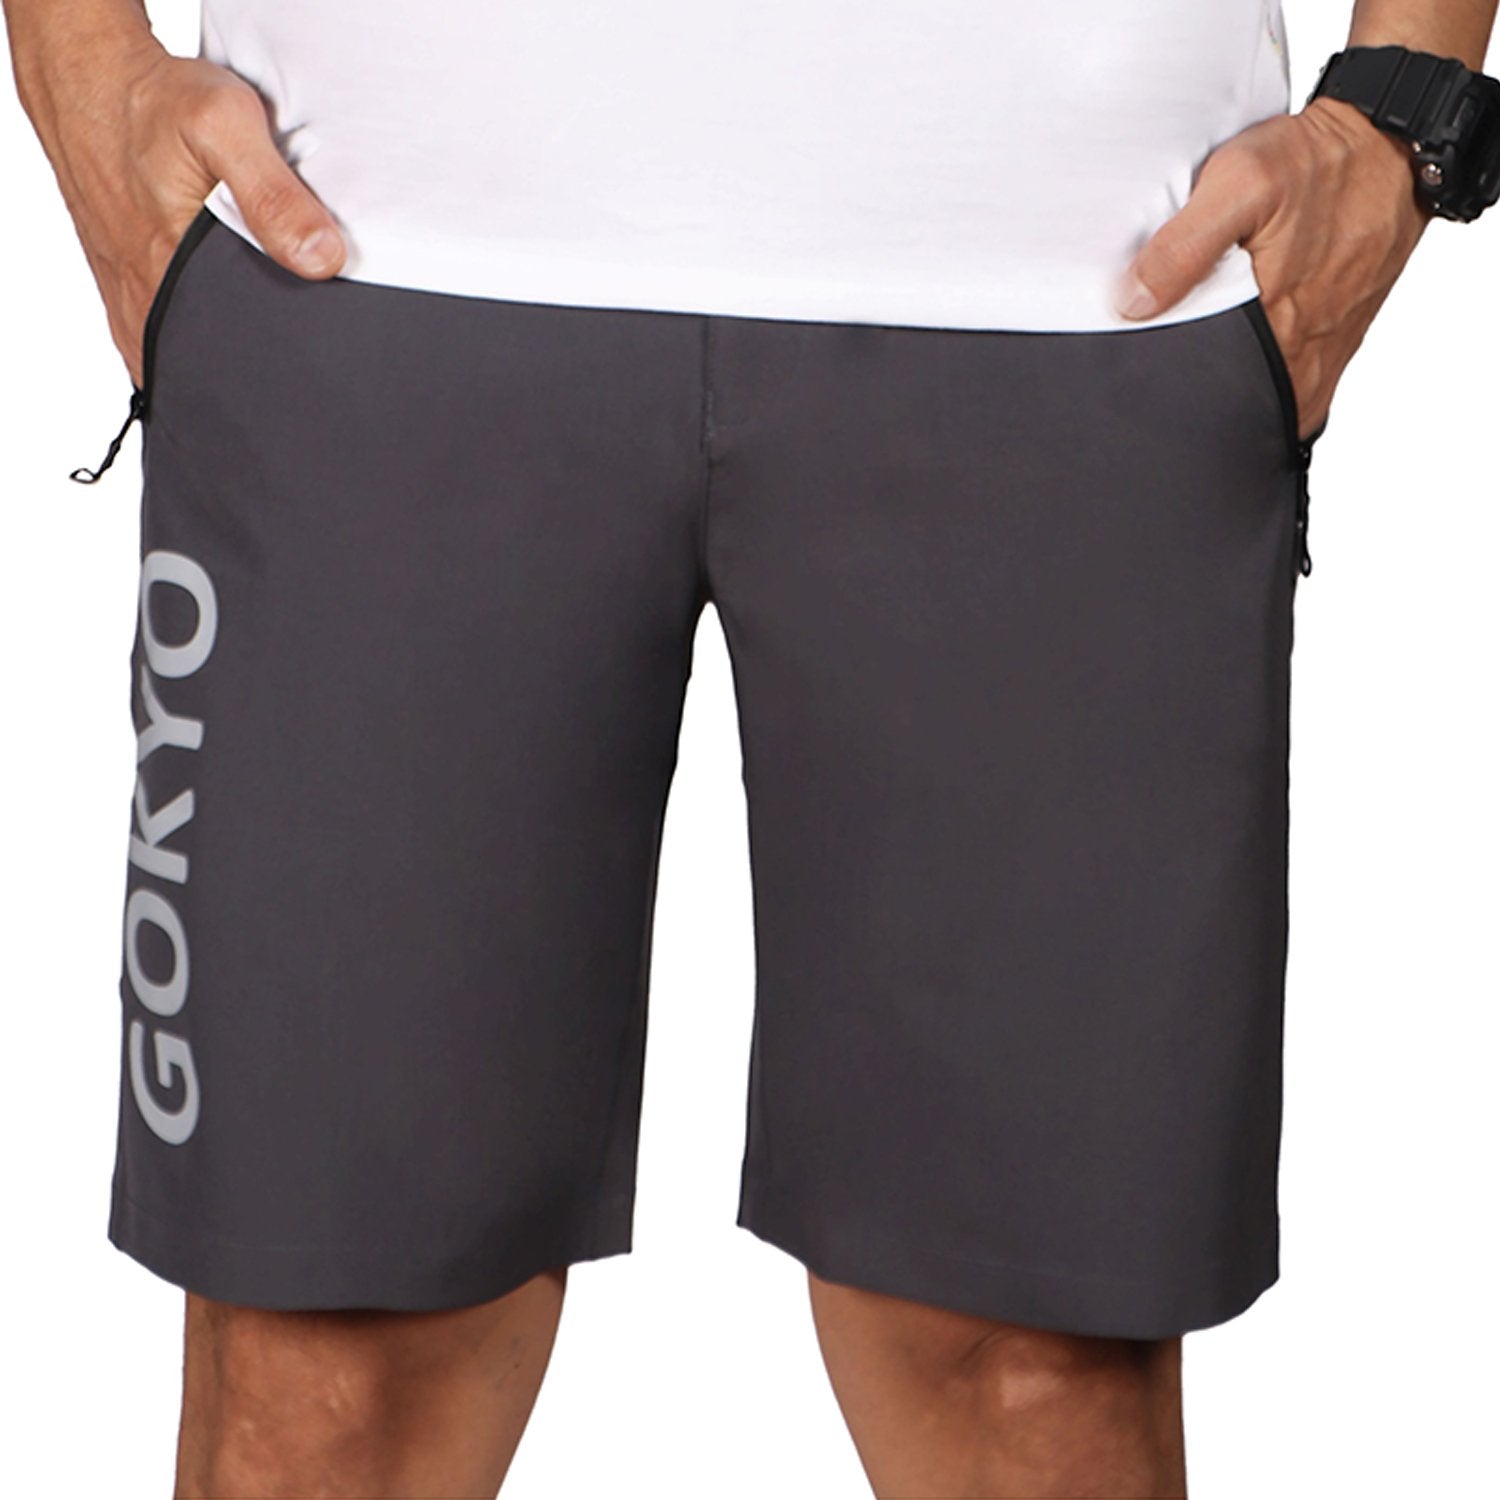 Buy Gokyo Kalimpong Trekking & Outdoor Shorts Dark Grey | Shorts at Gokyo Outdoor Clothing & Gear